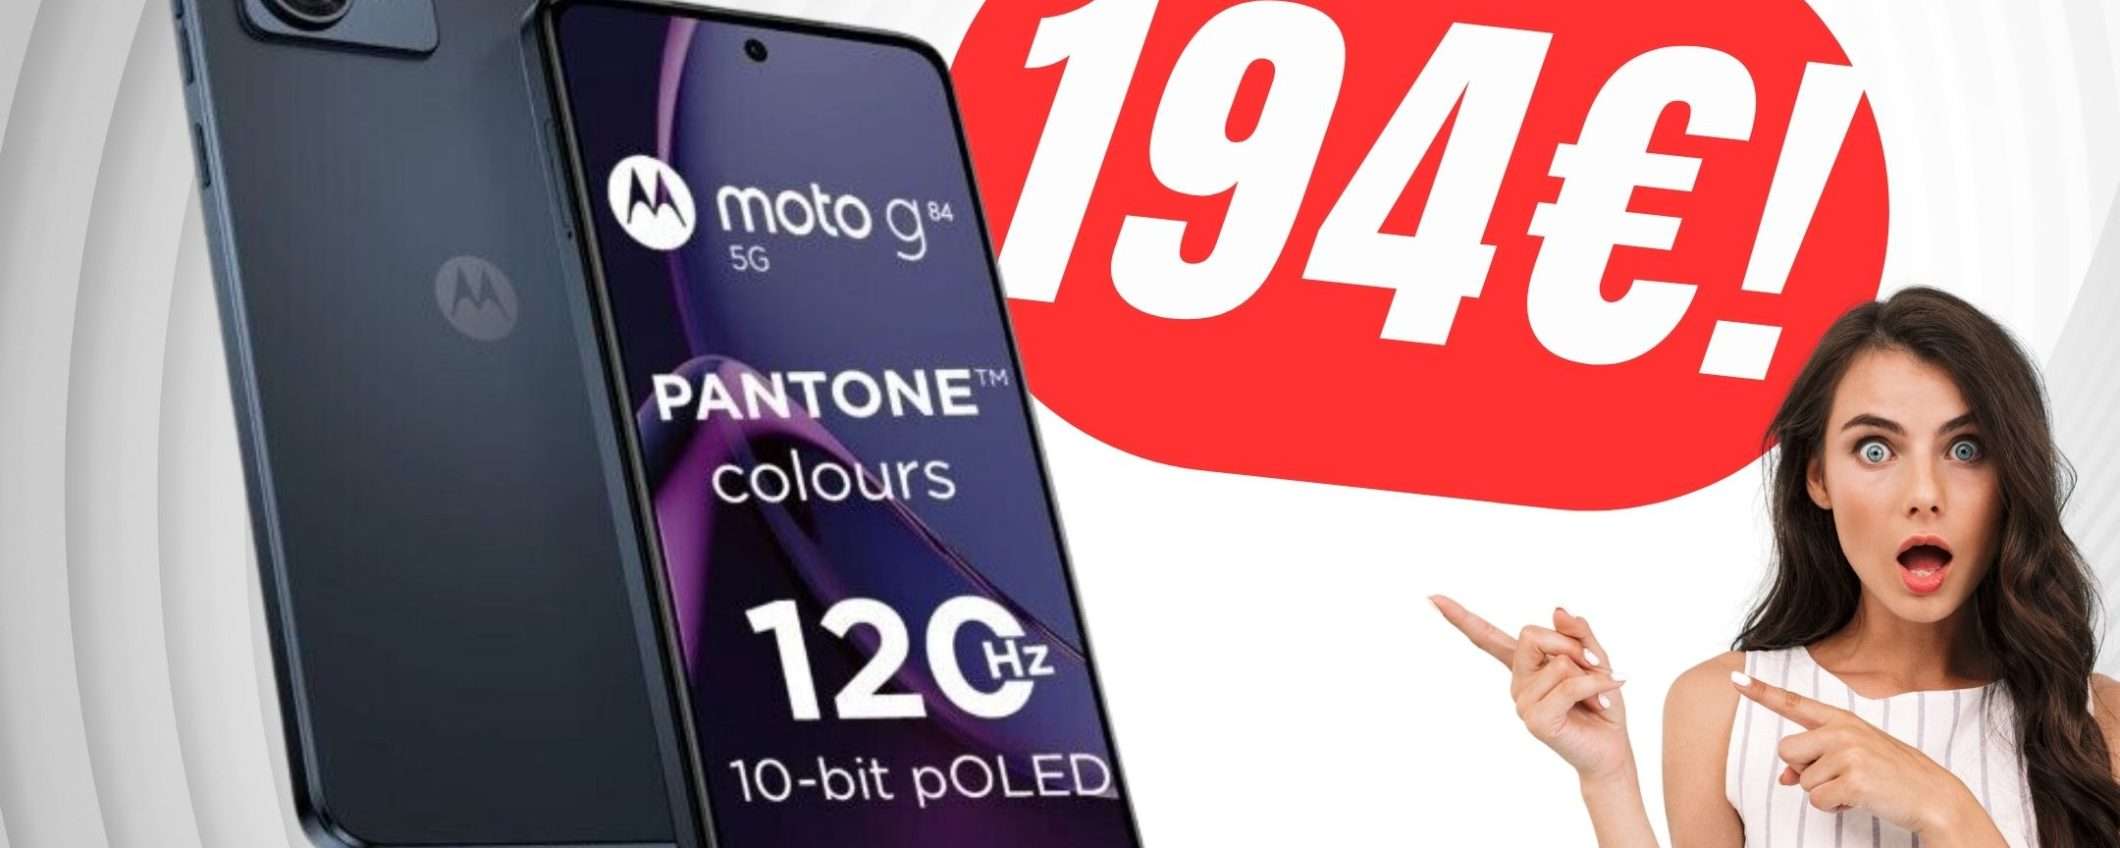 Più di 100€ di SCONTO sul Motorola Moto G84 5G grazie al COUPON!